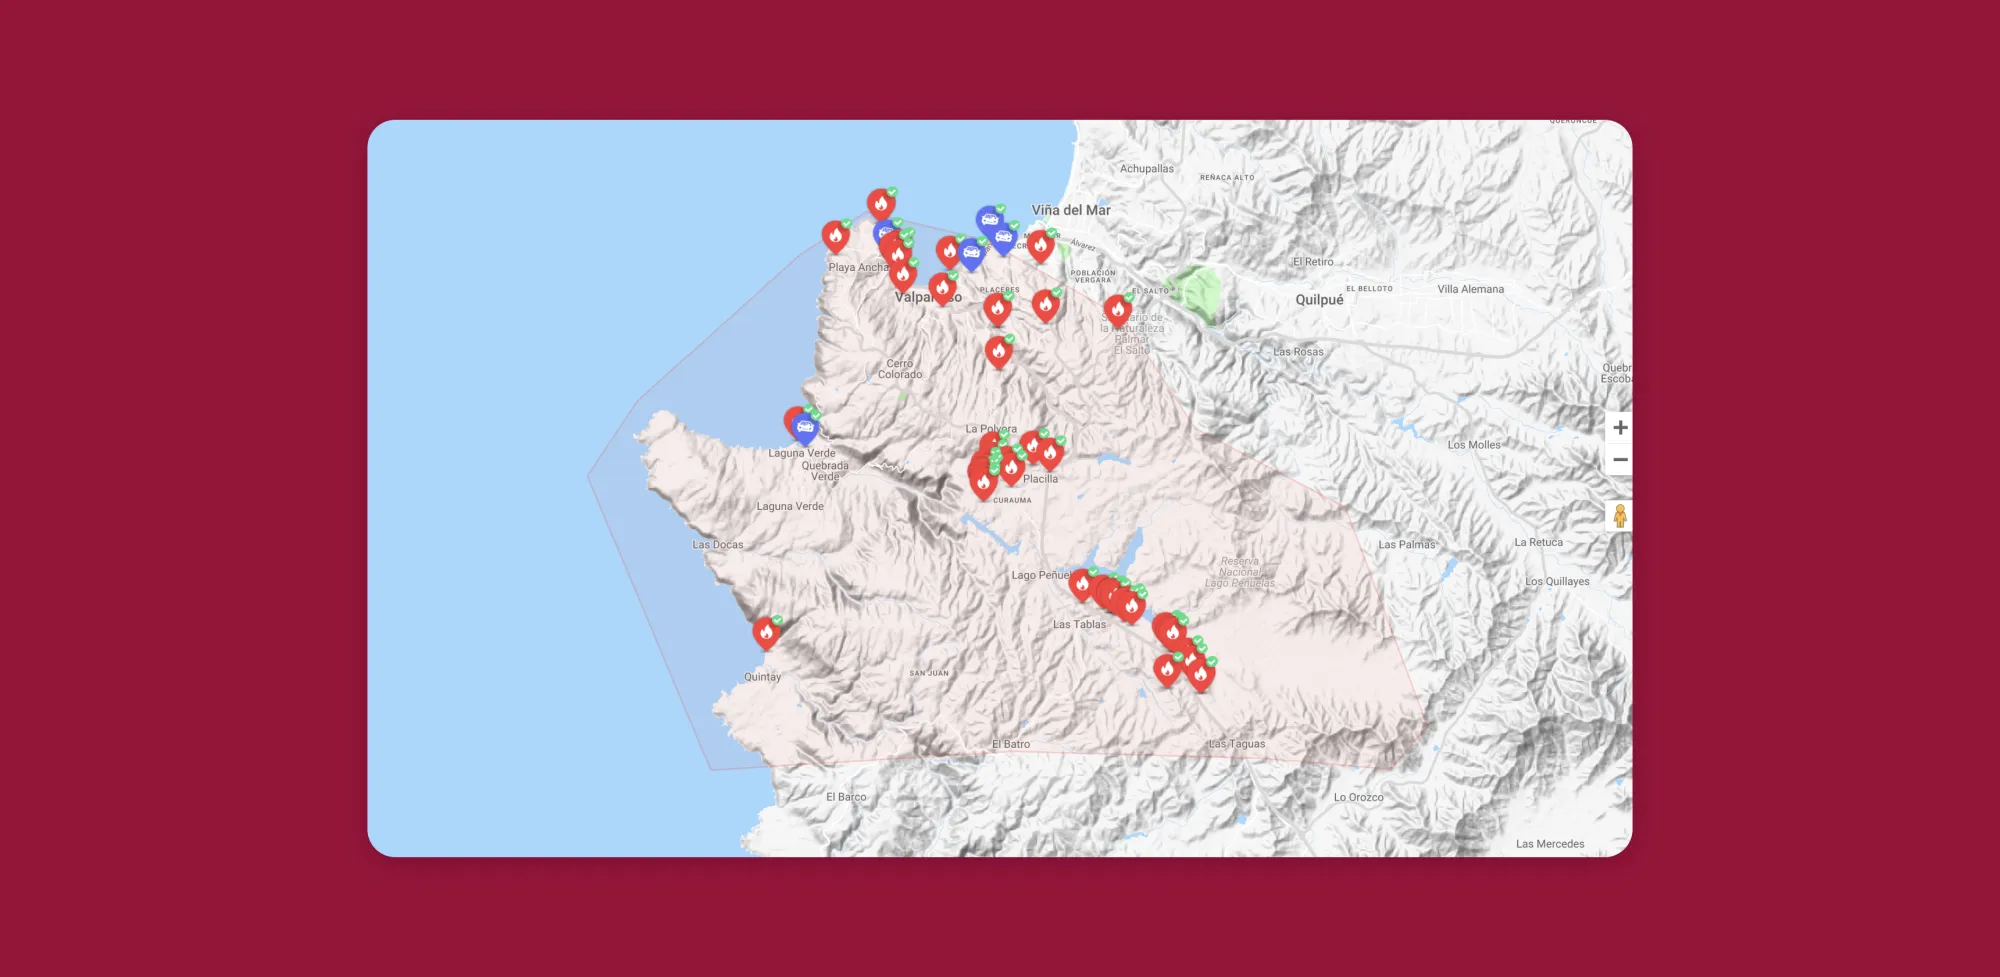 Mapa con pines de incendio y accidentes de reportes recibidos en la plataforma SOSAFE que usa el Cuerpo de Bomberos de Valparaíso.